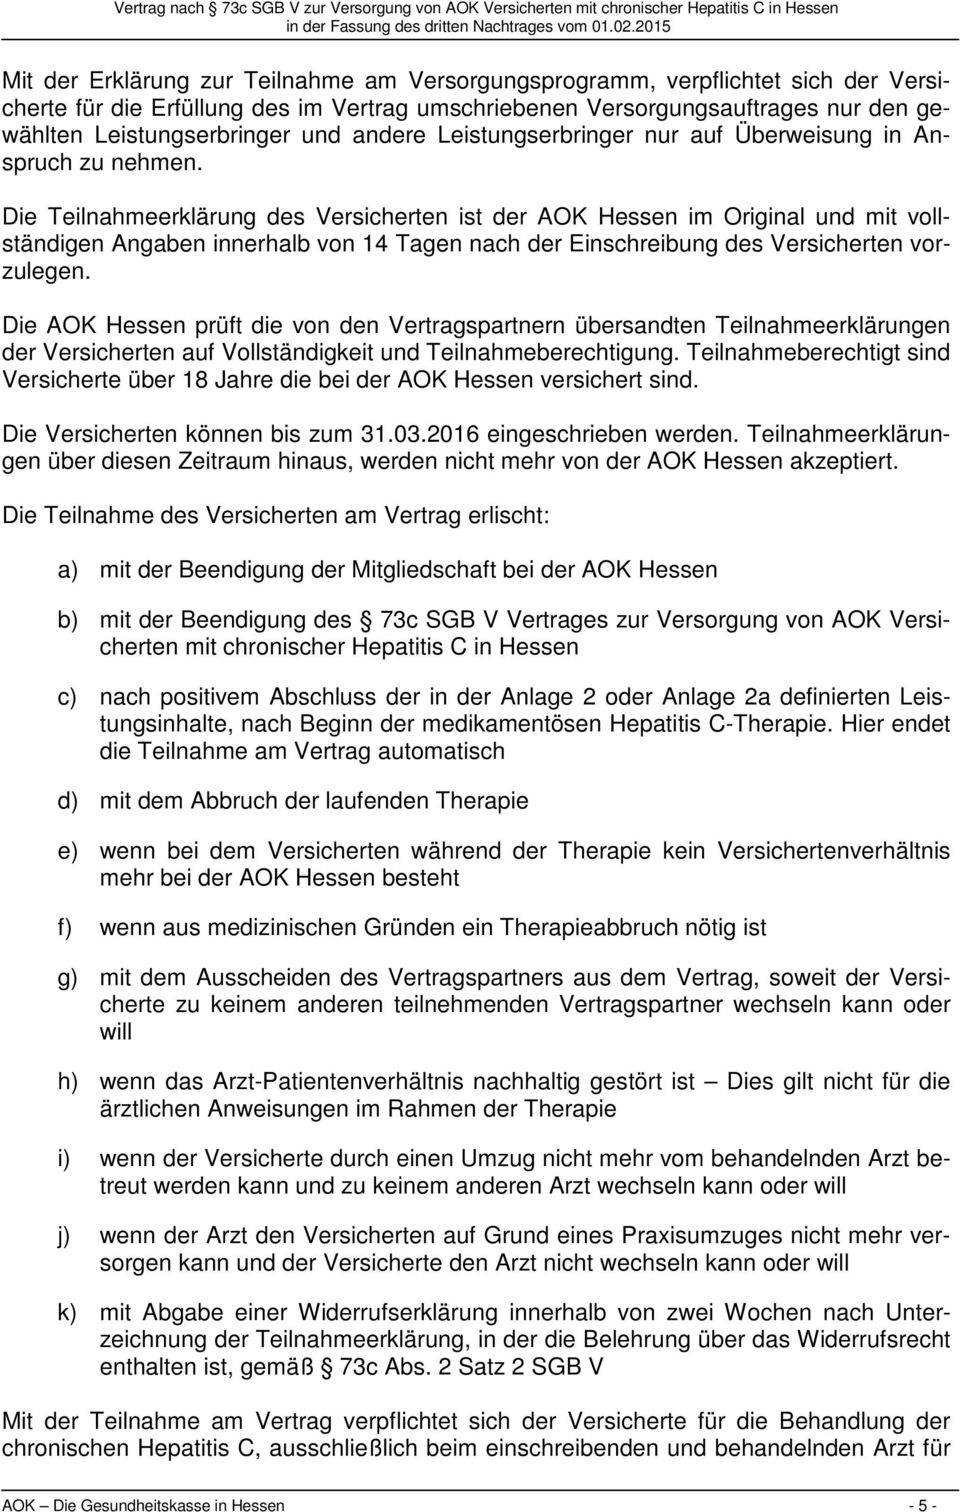 Die Teilnahmeerklärung des Versicherten ist der AOK Hessen im Original und mit vollständigen Angaben innerhalb von 14 Tagen nach der Einschreibung des Versicherten vorzulegen.